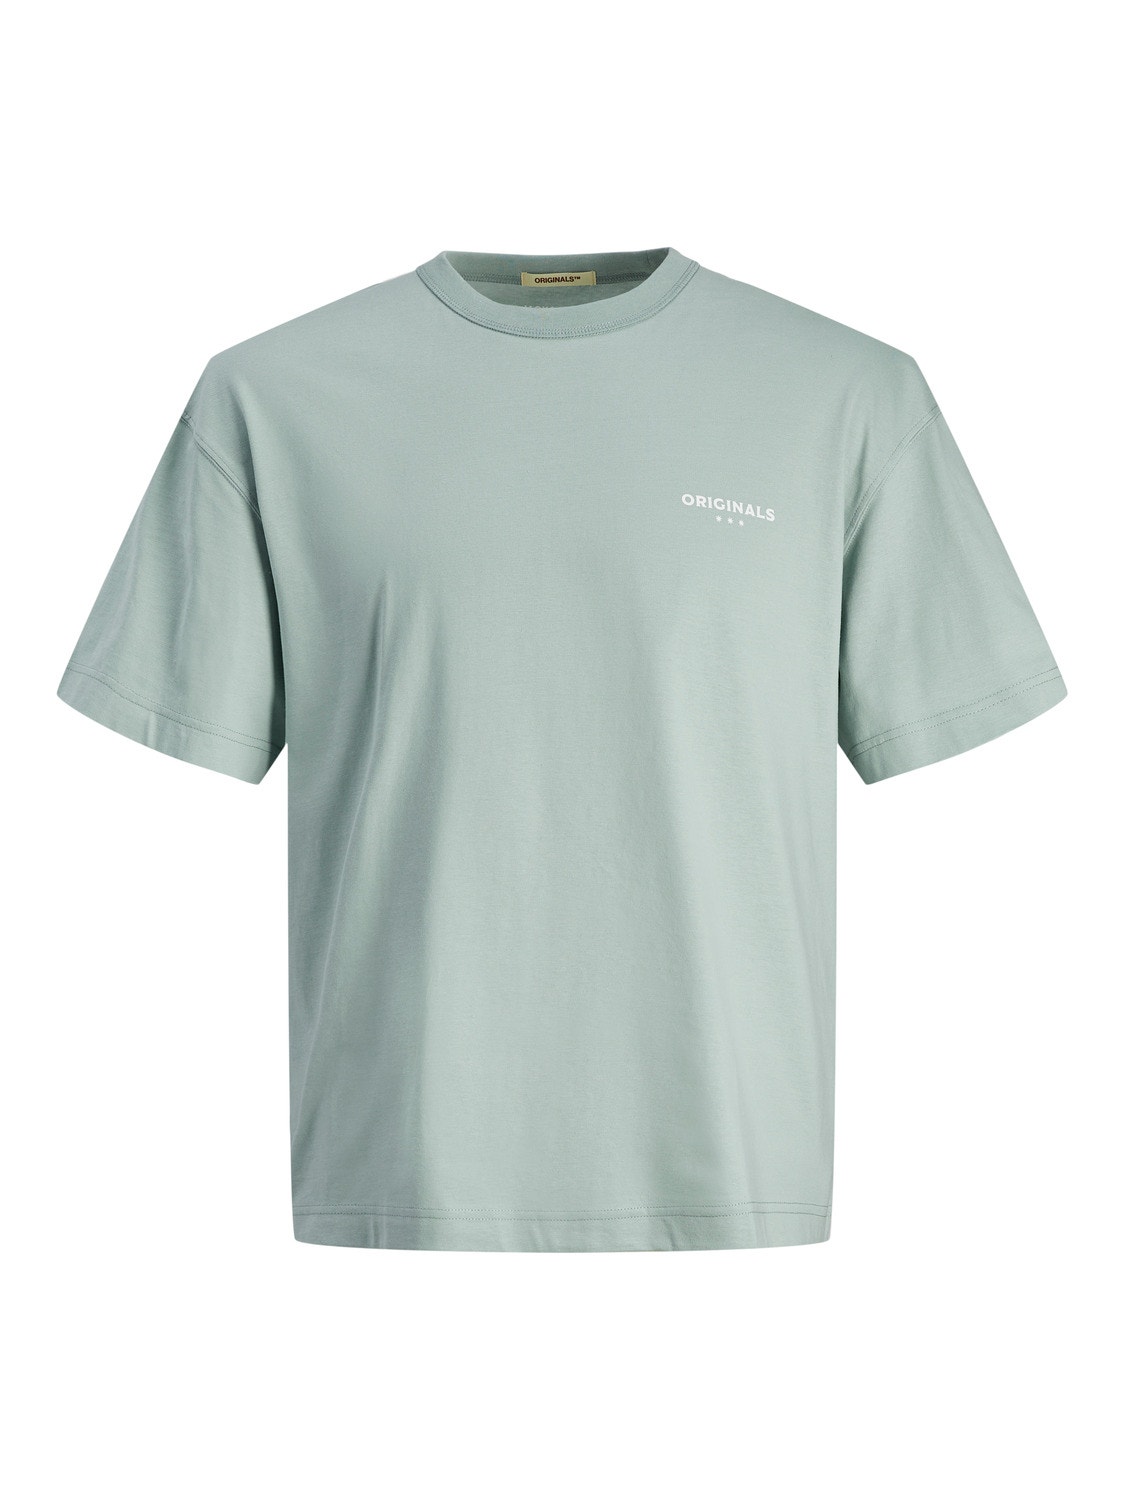 Jack & Jones Nadruk Okrągły dekolt T-shirt -Gray Mist - 12256258